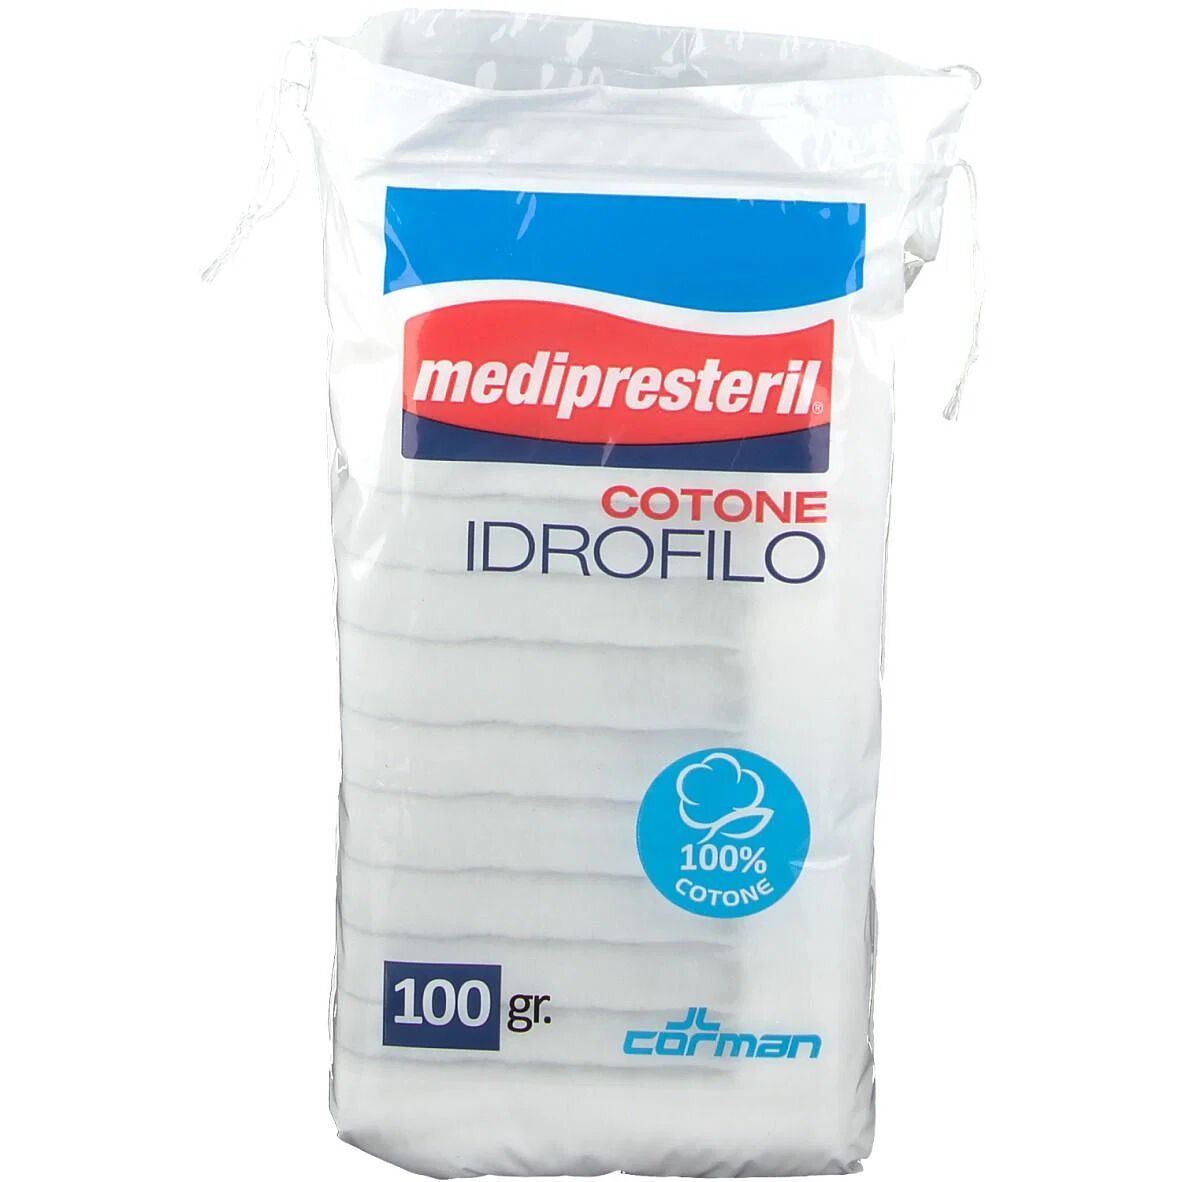 Corman Cotone Idrofilo Fu Medipresteril Confezione Da 100grammi